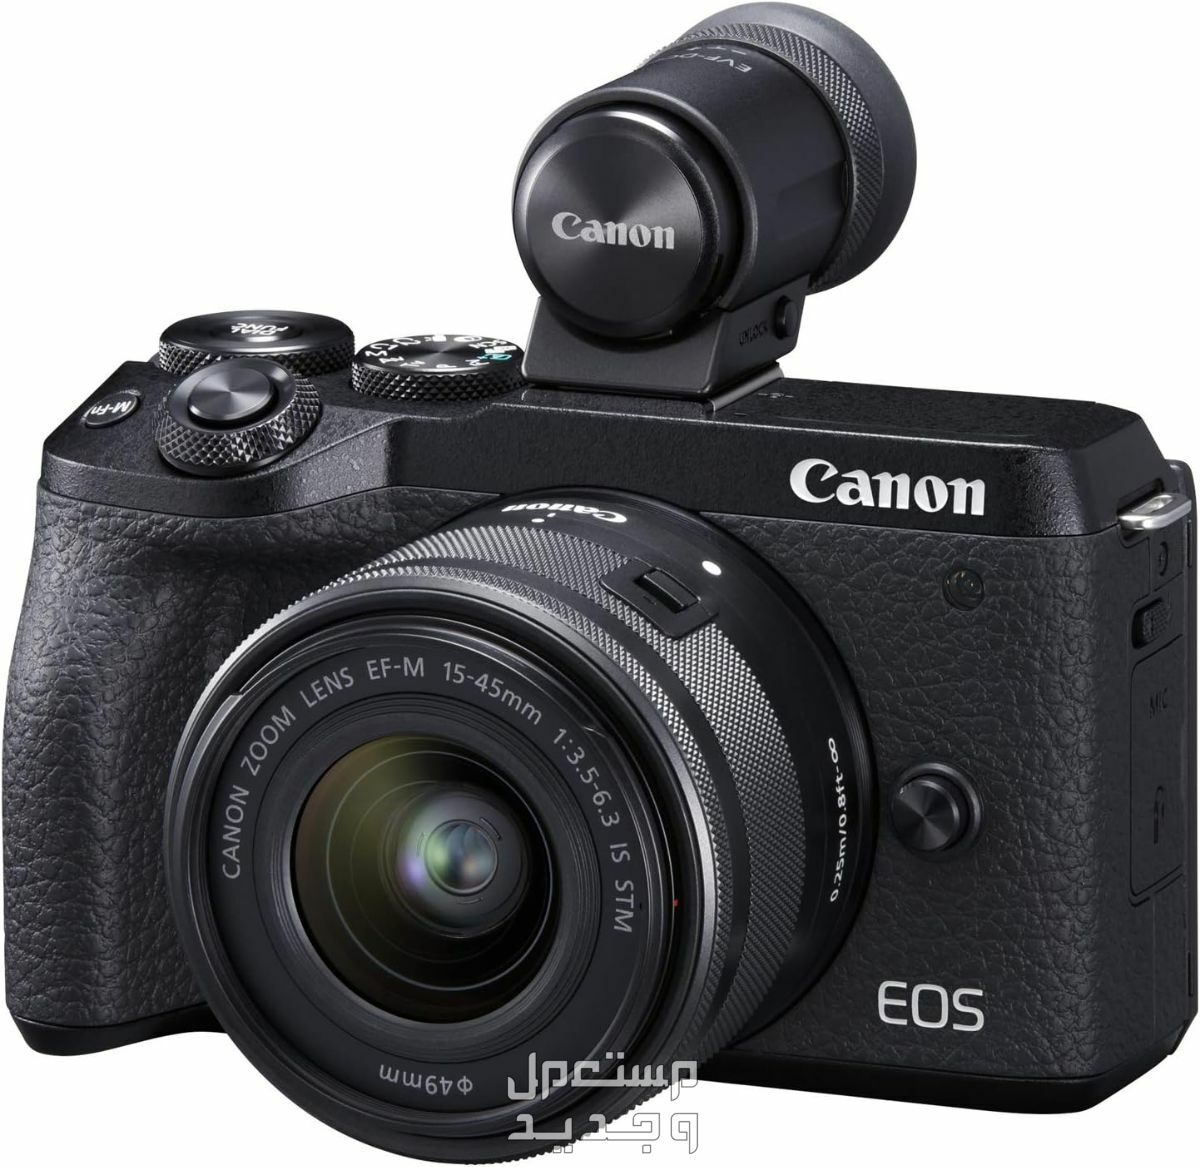 سعر ومميزات ومواصفات أرخص 5 كاميرات تصوير من كانون في العراق سعر كاميرا Canon EOS M6 Mark II